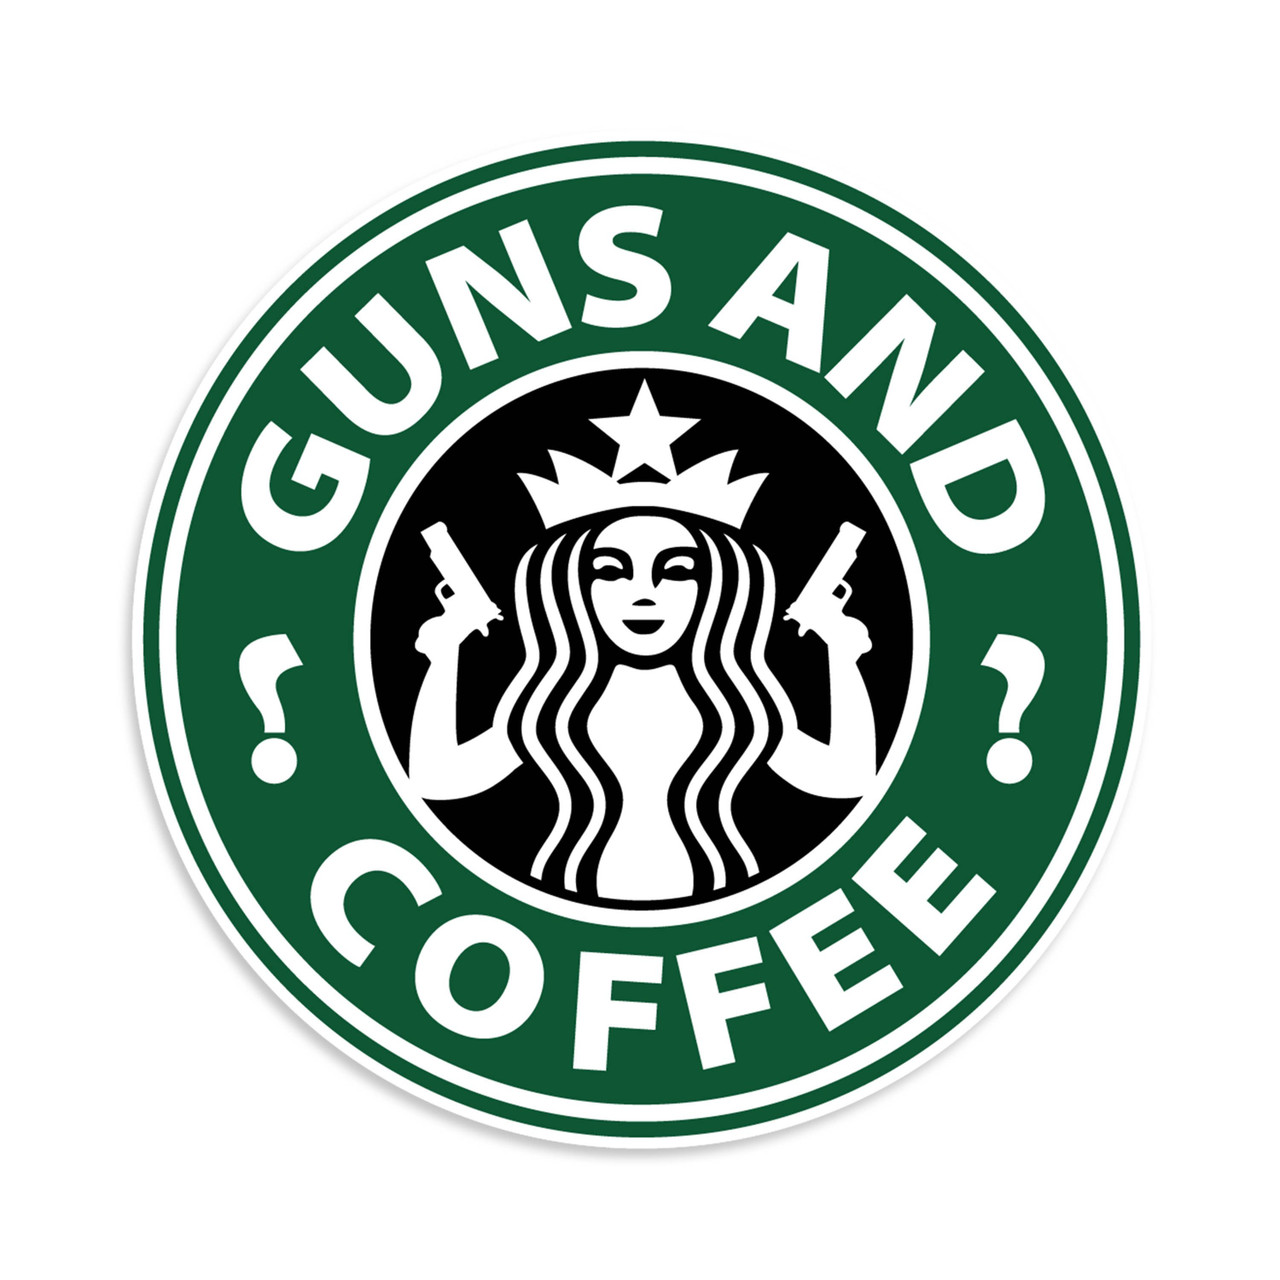 Best Stickers Online - Guns And Coffee Vinyl Sticker